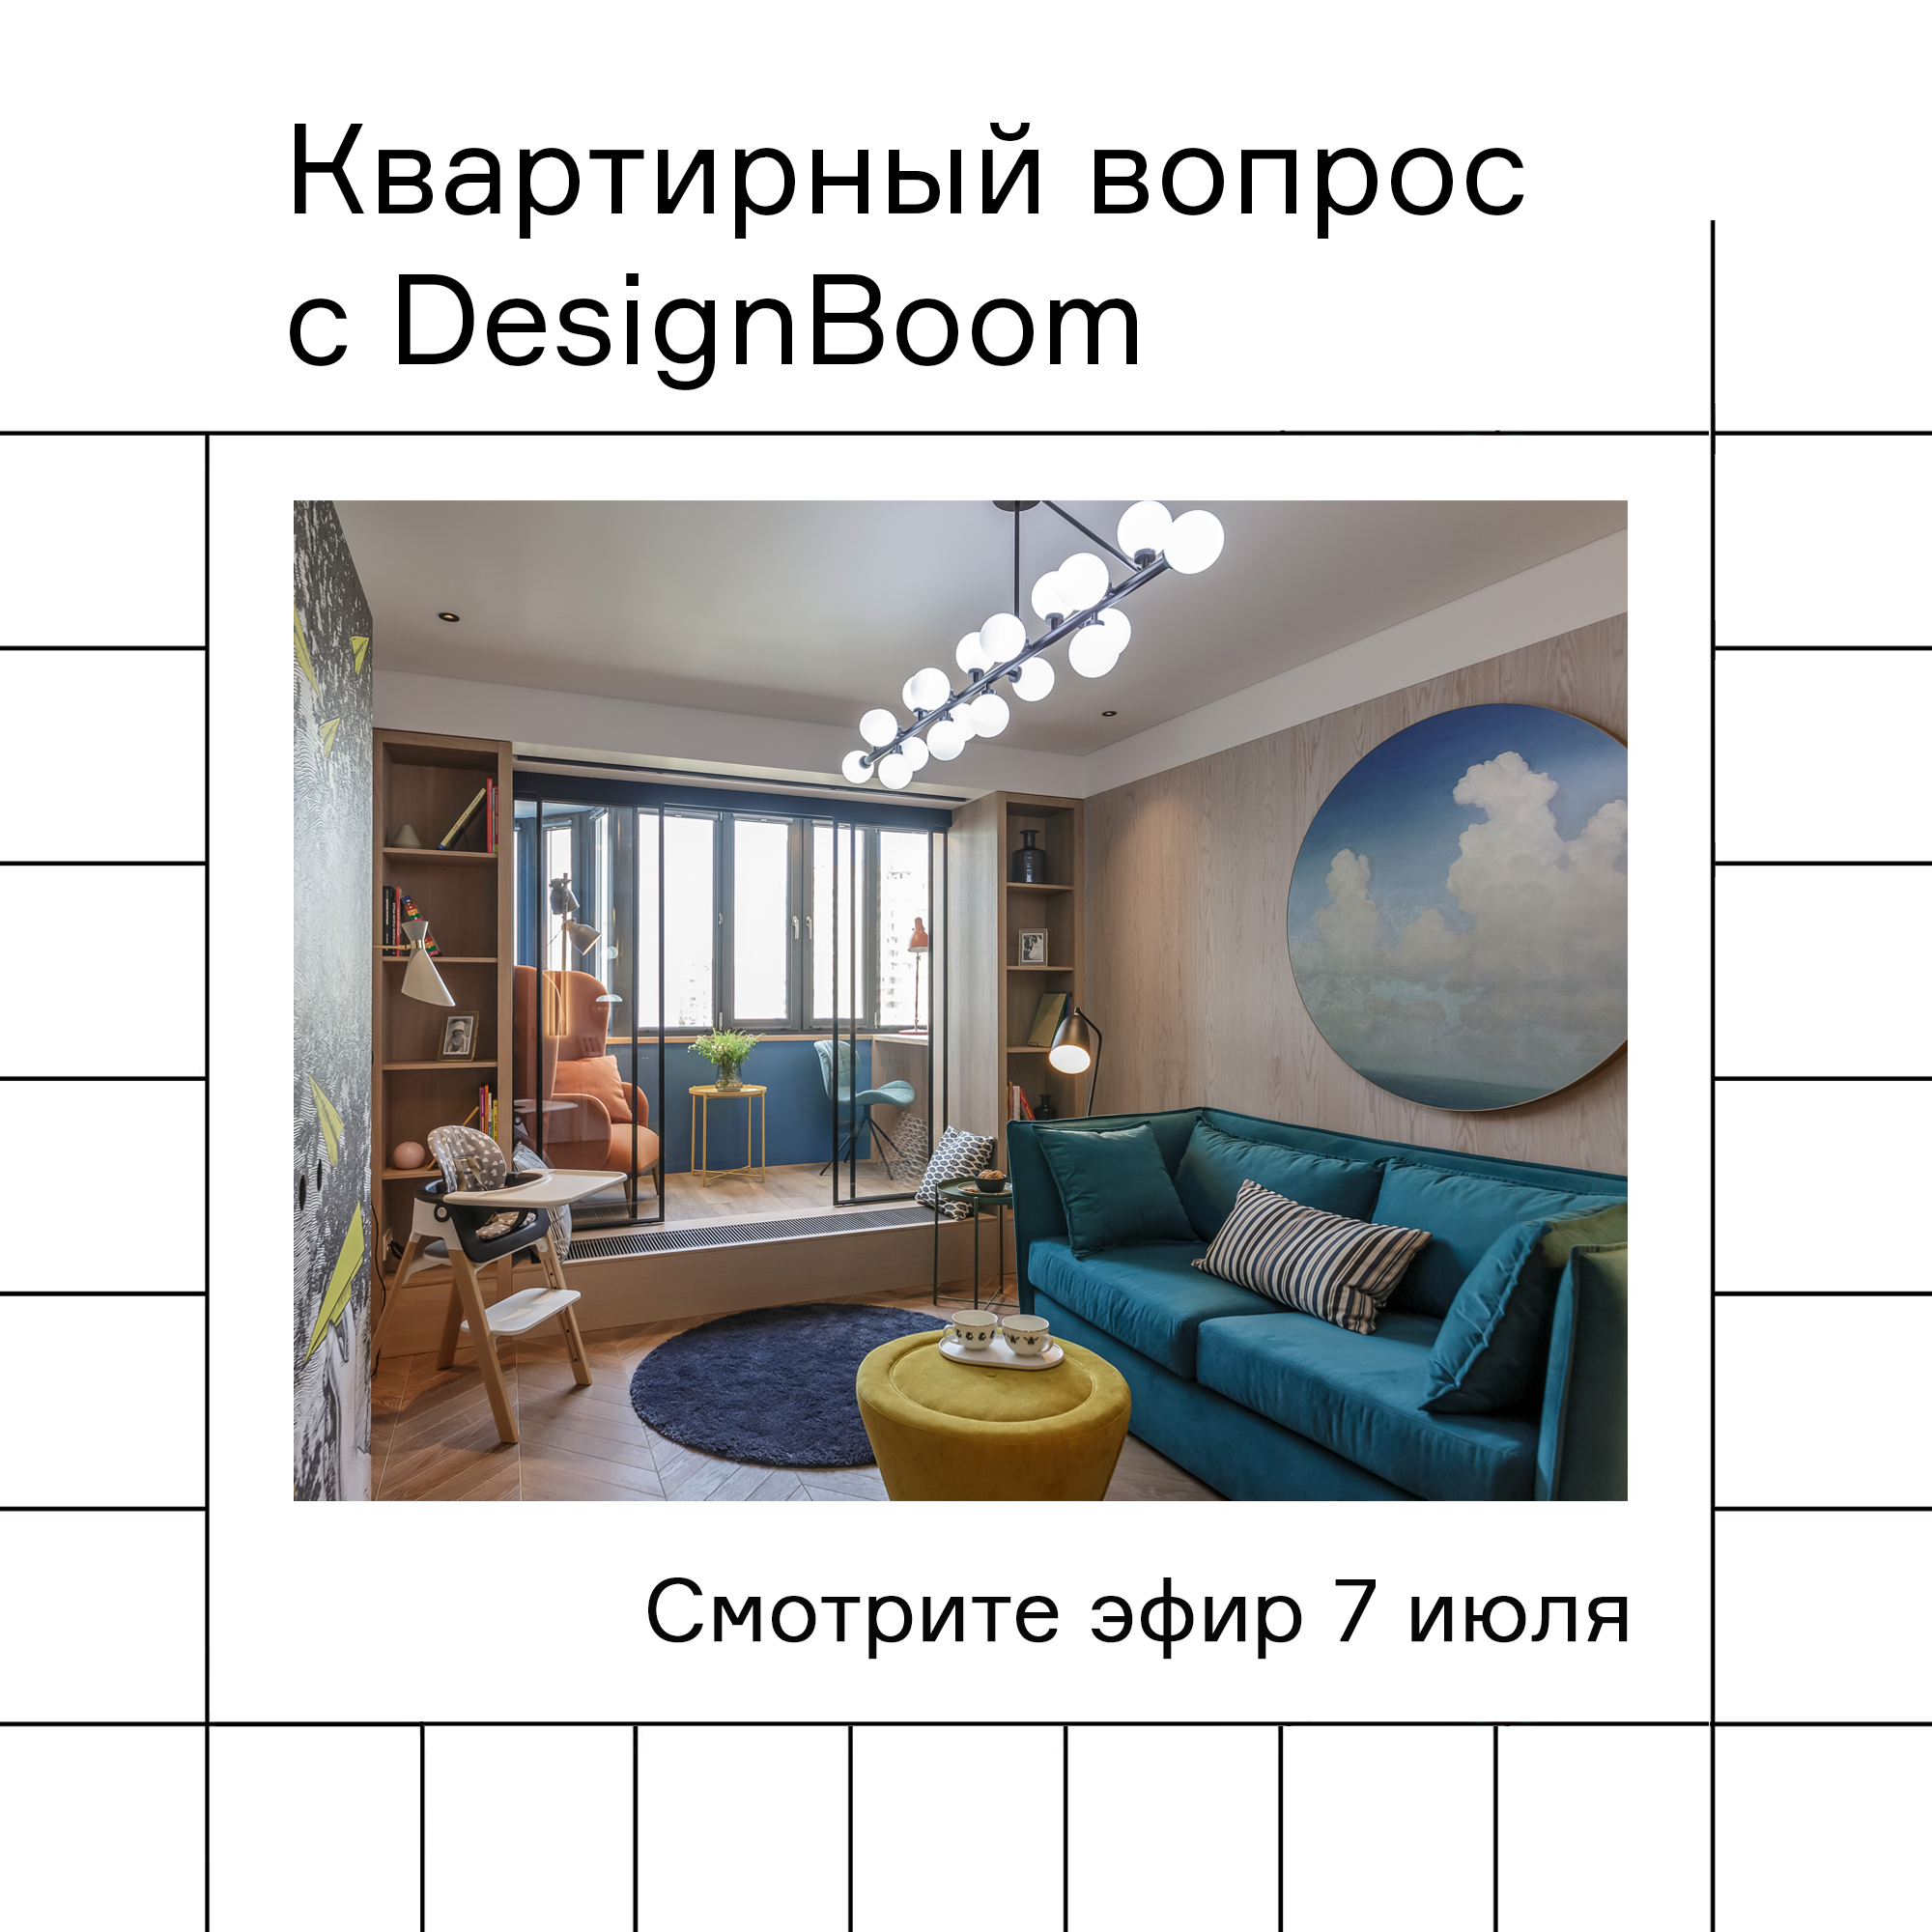 Изображение Смотрите "Квартирный вопрос" с участием DesignBoom